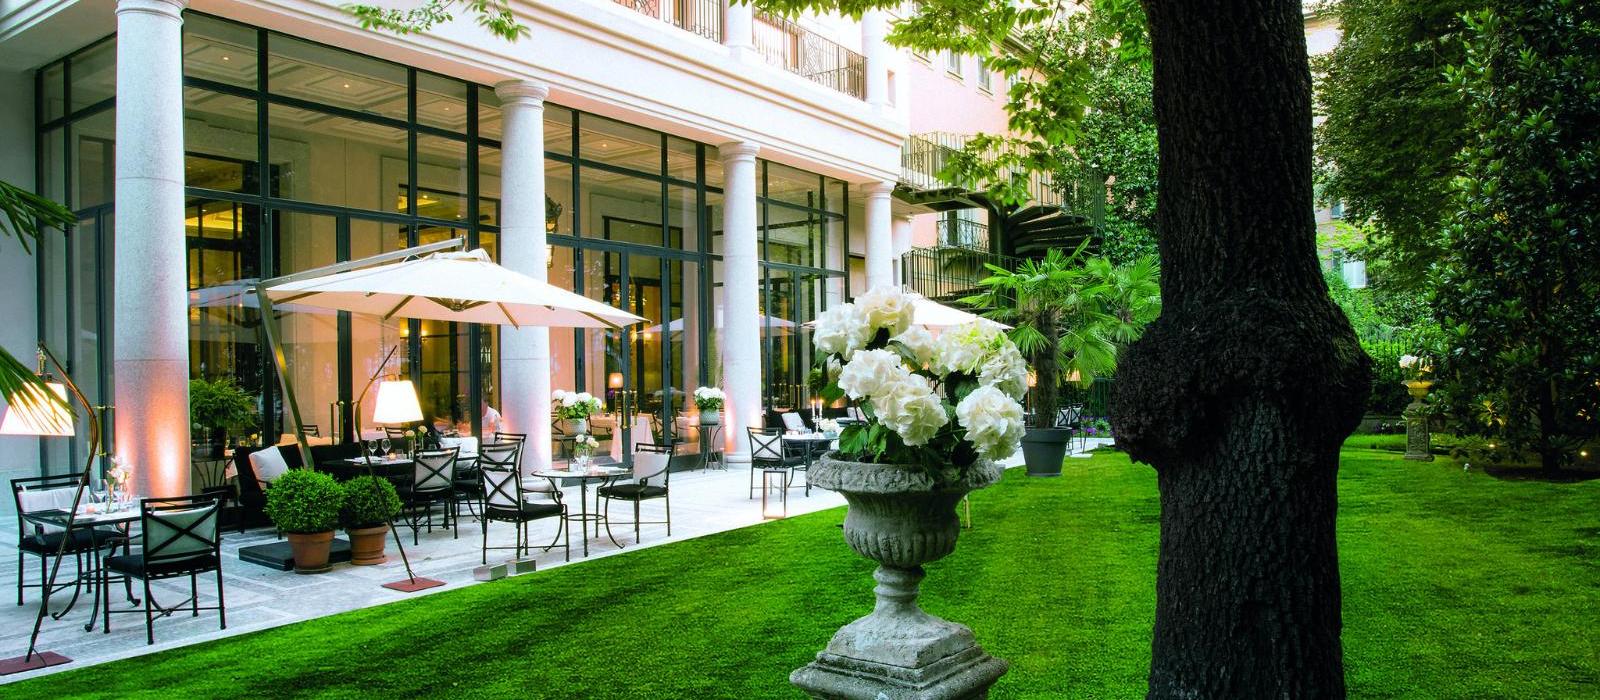 米兰巴黎宫水疗酒店(Palazzo Parigi Hotel & Grand Spa) 私人花园外景图片  www.lhw.cn